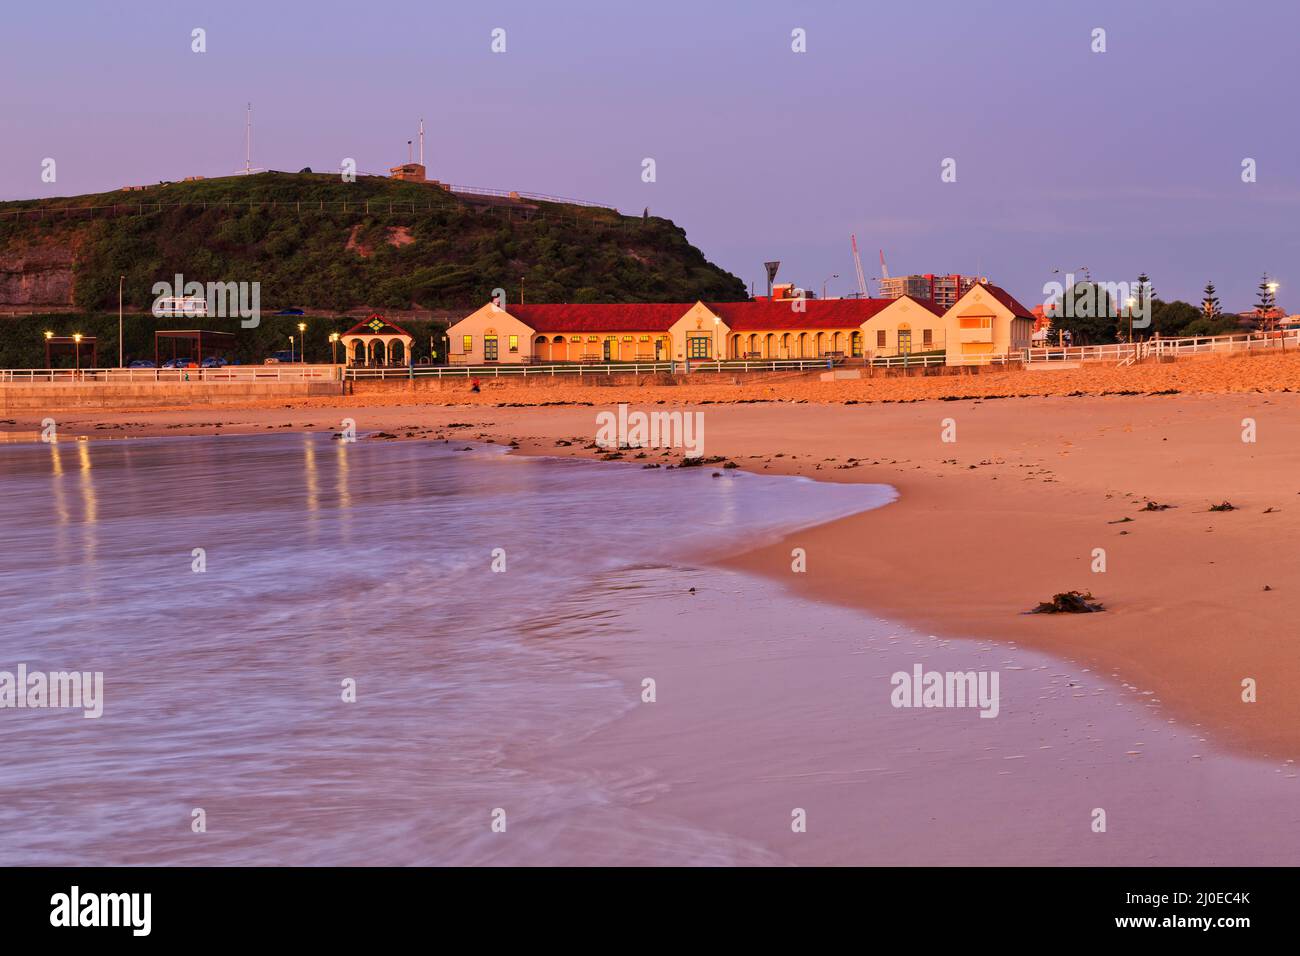 Öffentliches Bad am Nobbys Beach in Newcastle, der australischen Stadt, bei Sonnenaufgang - pazifikküste. Stockfoto